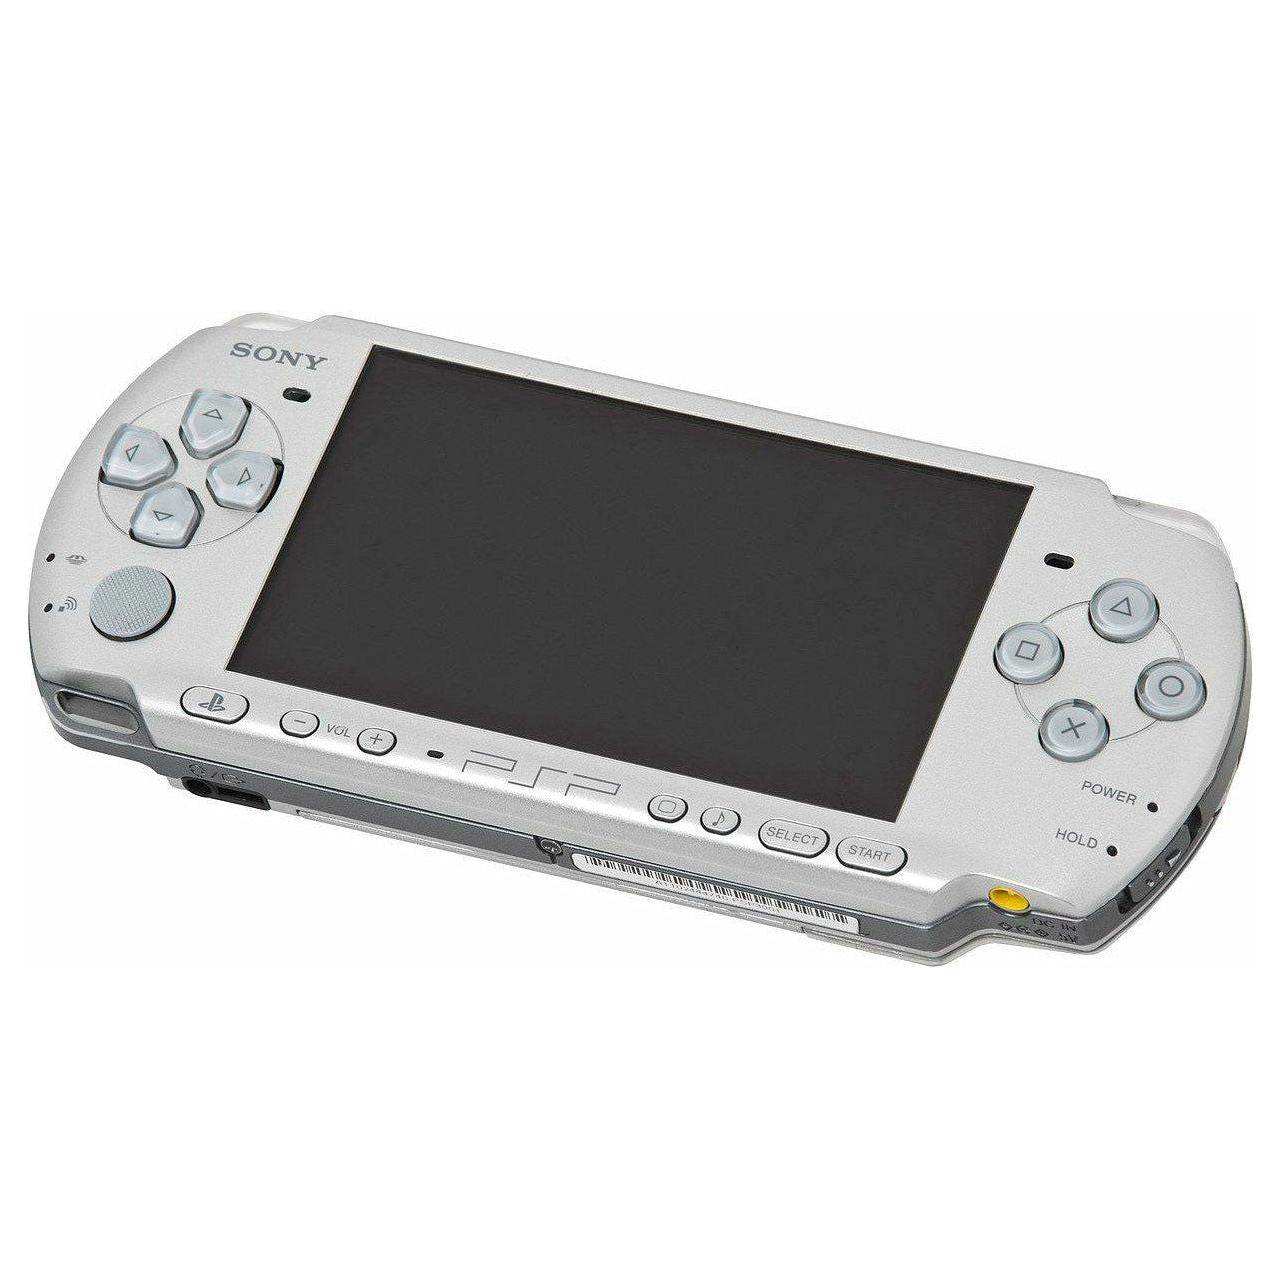 Système PSP - Modèle 1000 (Argent)